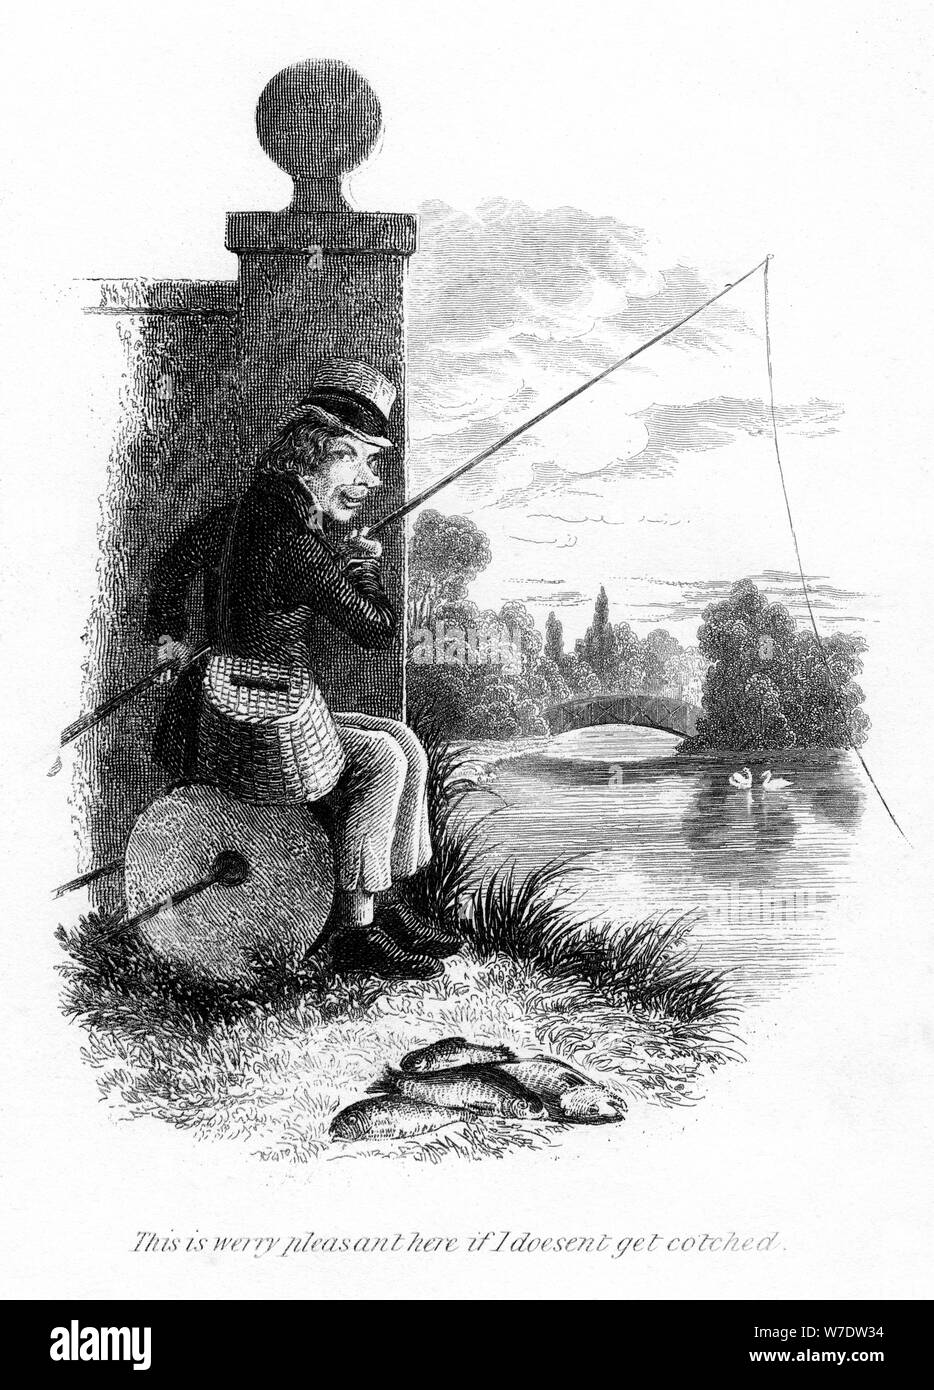 Un hombre pescando ilegalmente. Artista: Desconocido Foto de stock